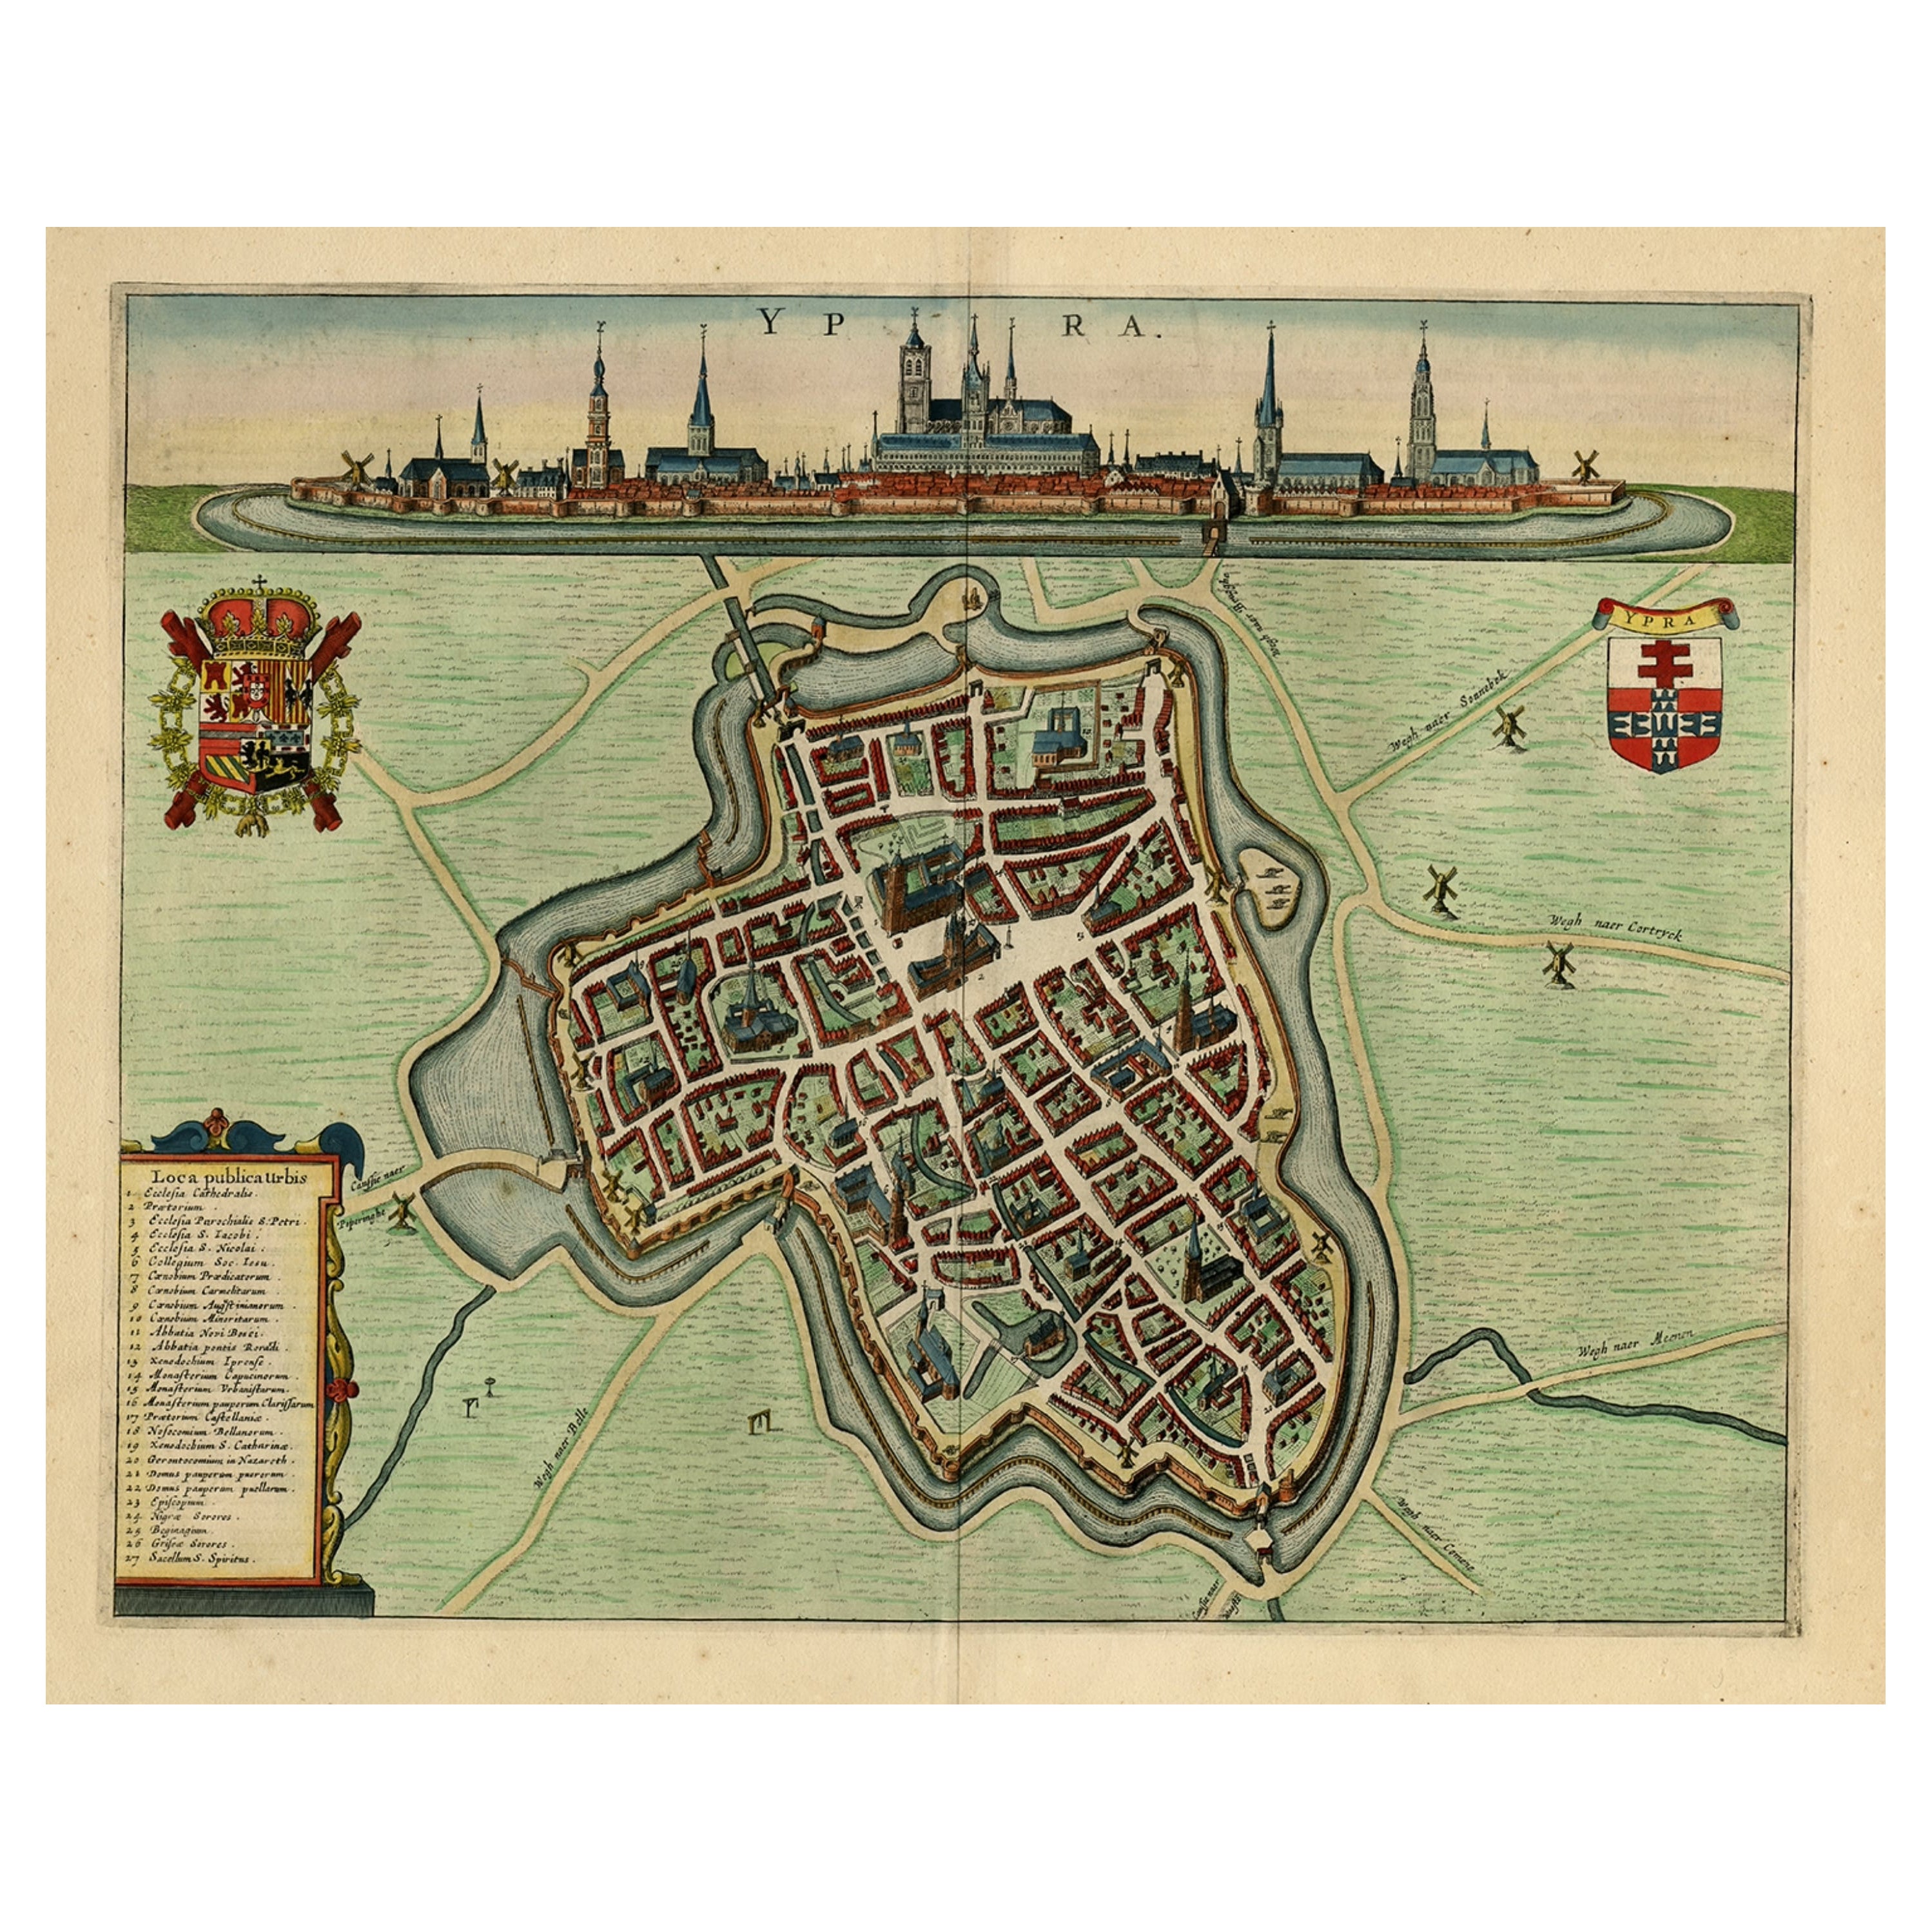 Plan d'une vue oiseau-forte d'Ieper ou d'Ypres en Belgique, 1649